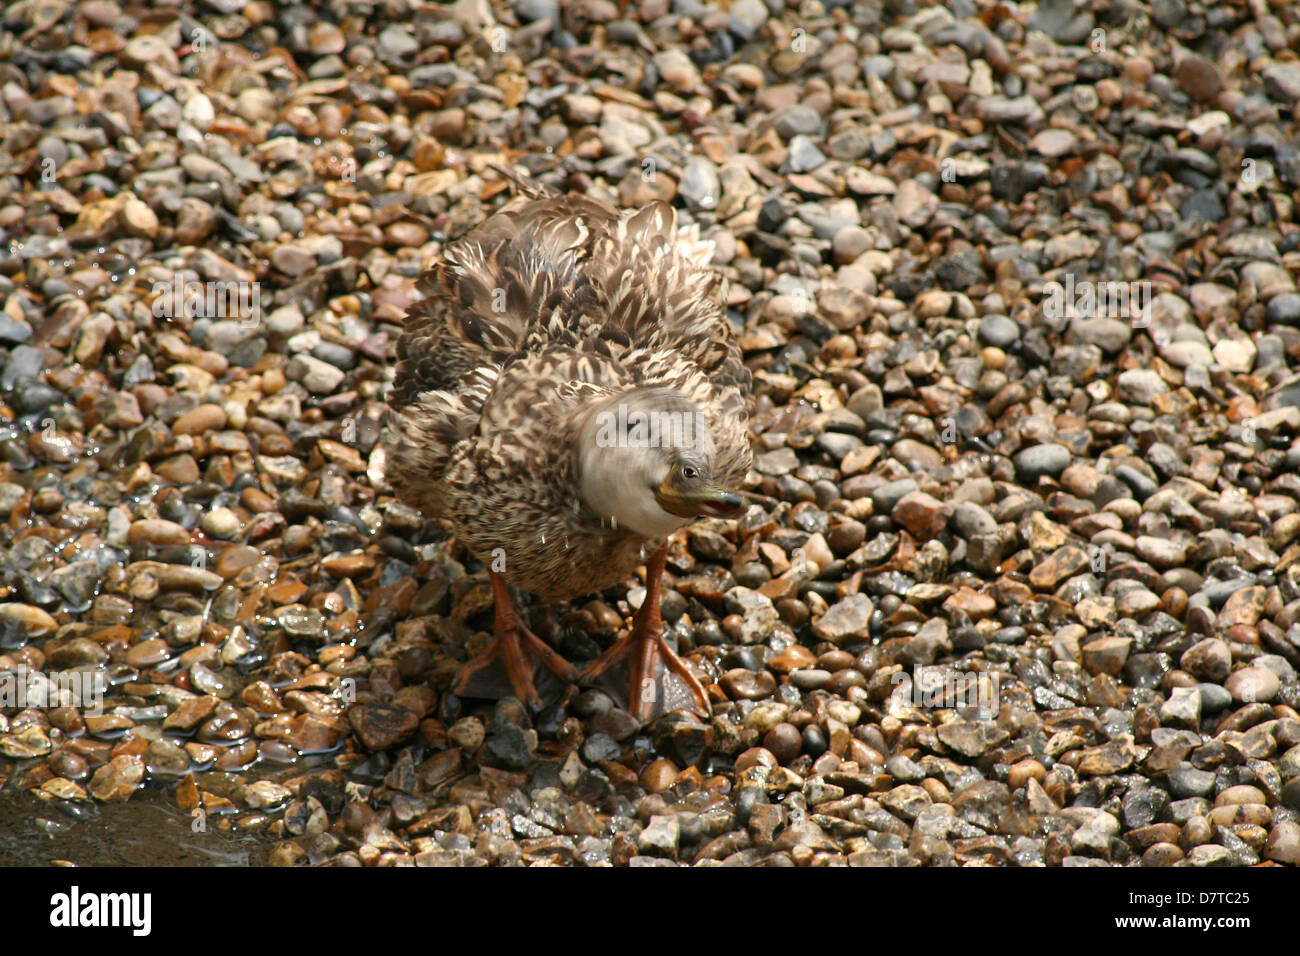 Die Ente! Eine weibliche Ente schütteln sich trocken, auf einige Kieselsteine getarnt. Stockfoto